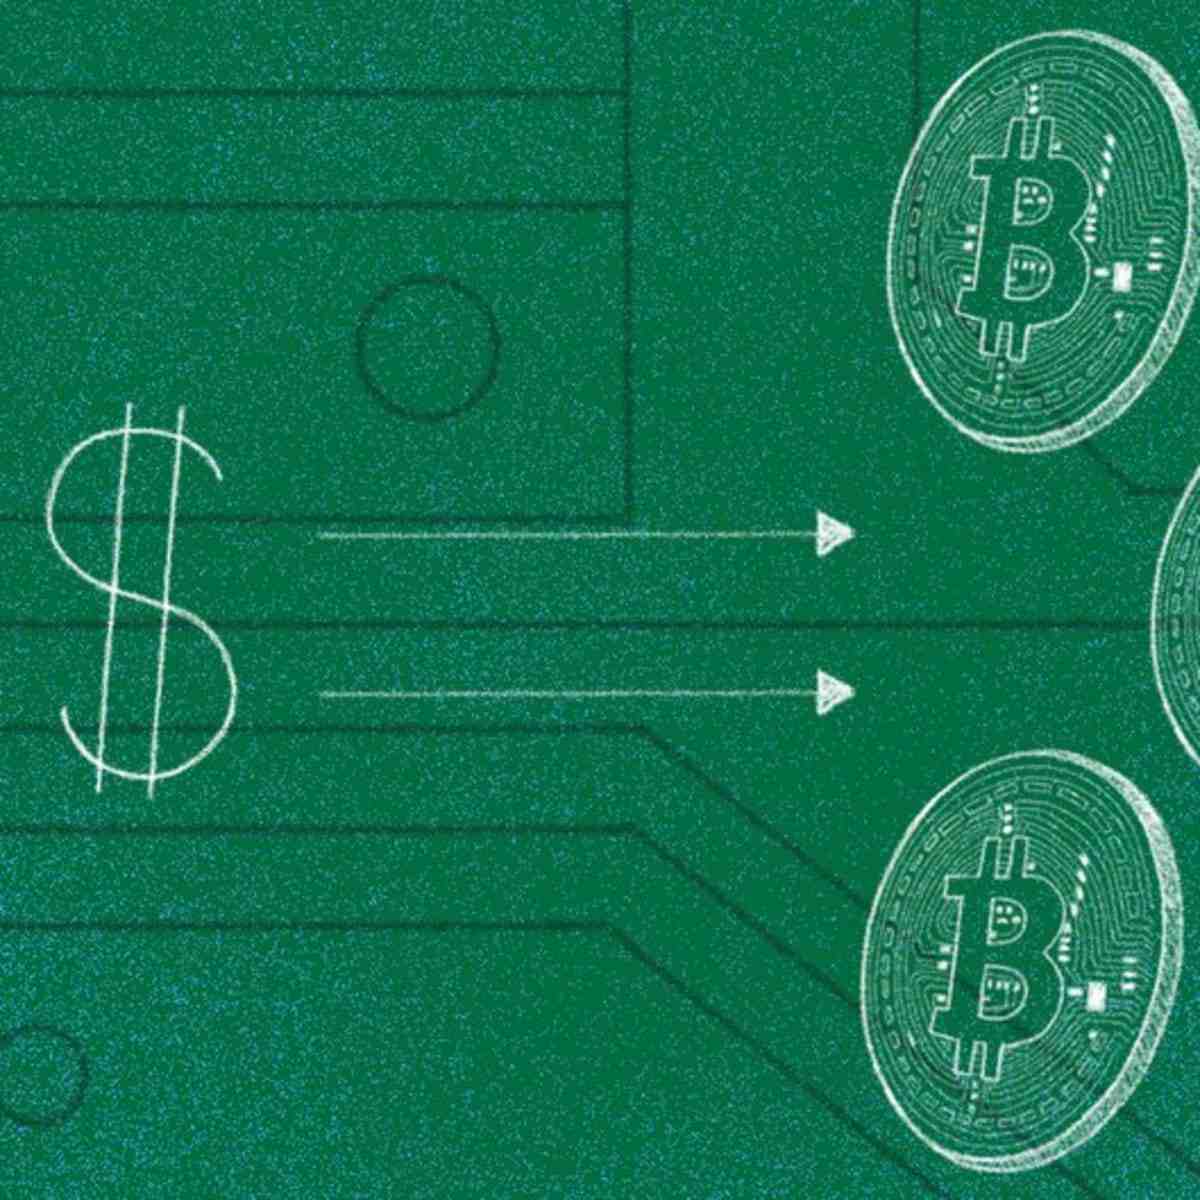 Quelle carte pour acheter des bitcoins ?